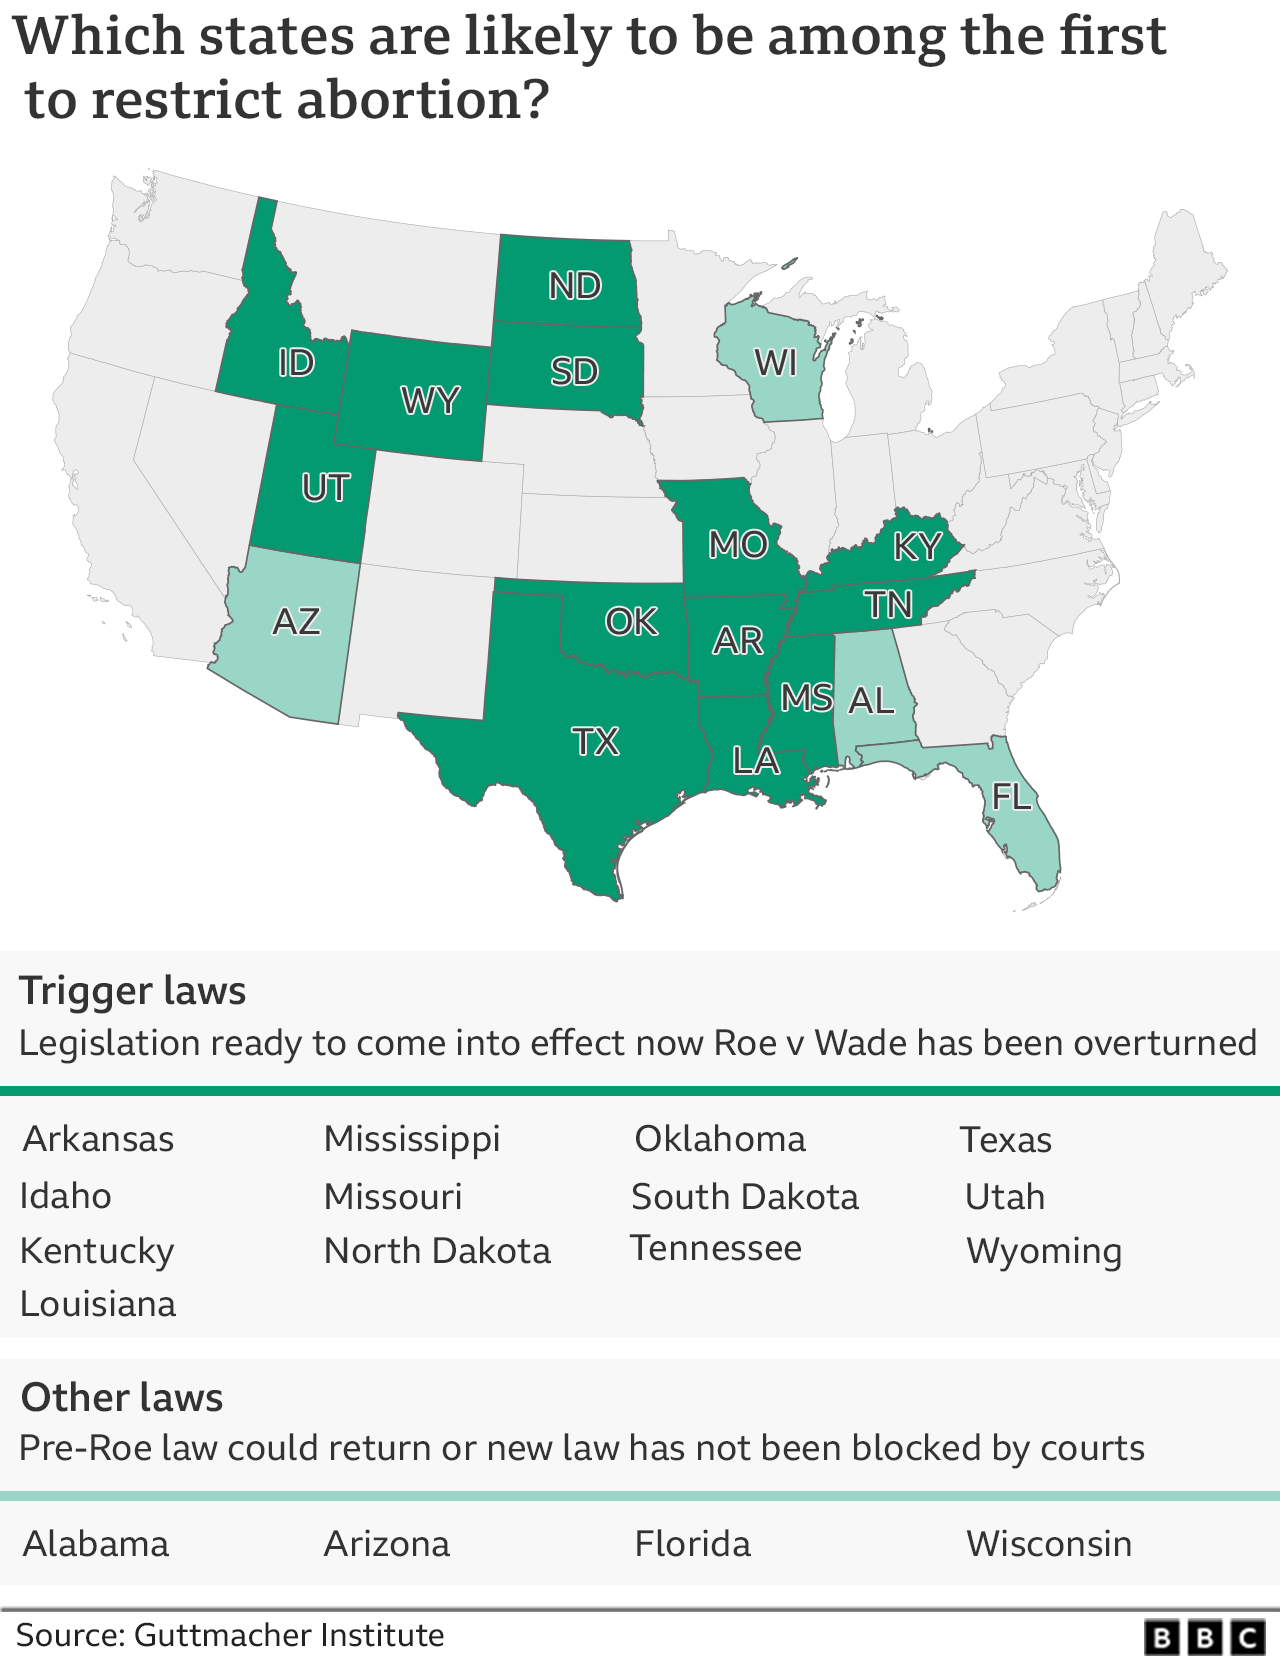 Карта показывает, в каких штатах есть законодательство, повлиять на аборты в случае отмены решения по делу Роу против Уэйда